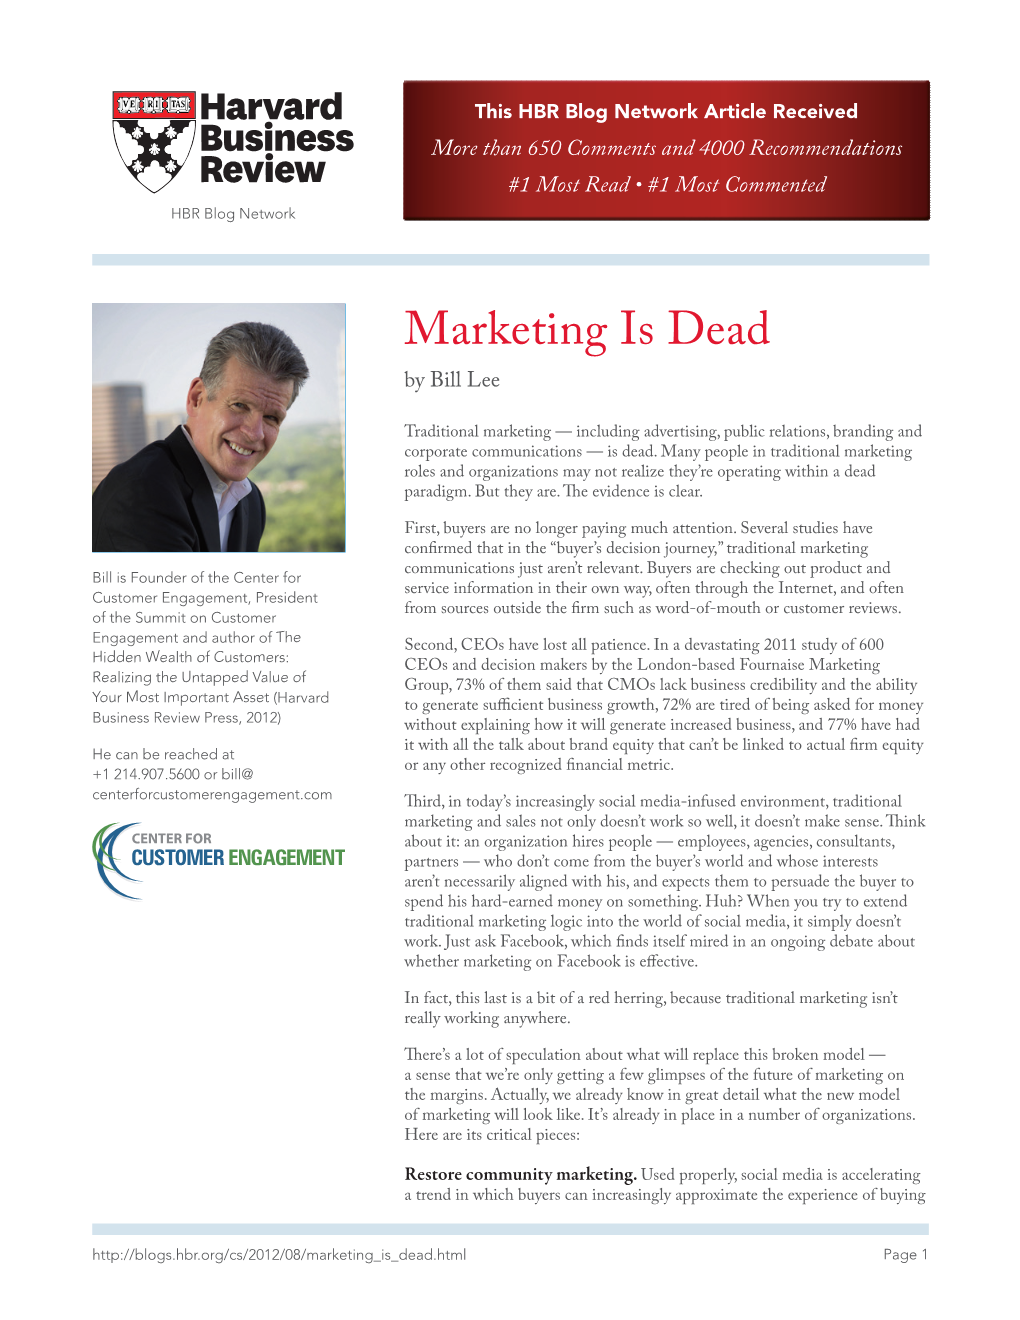 Marketing Is Dead by Bill Lee